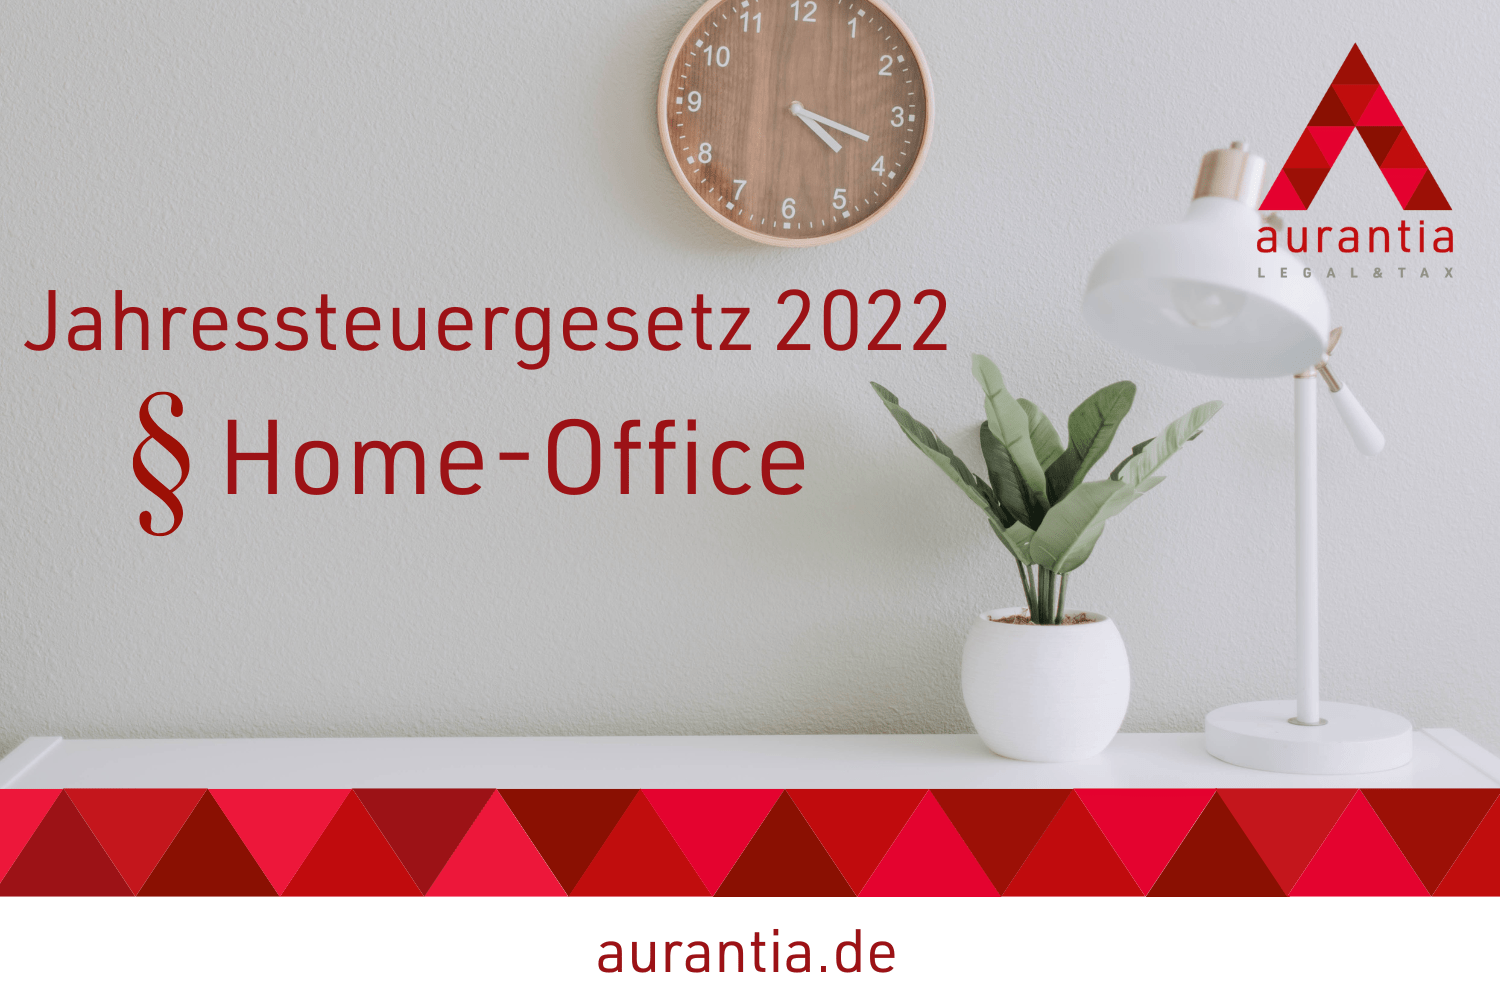 Home-Office Pauschale JStG2022 aurantia.de